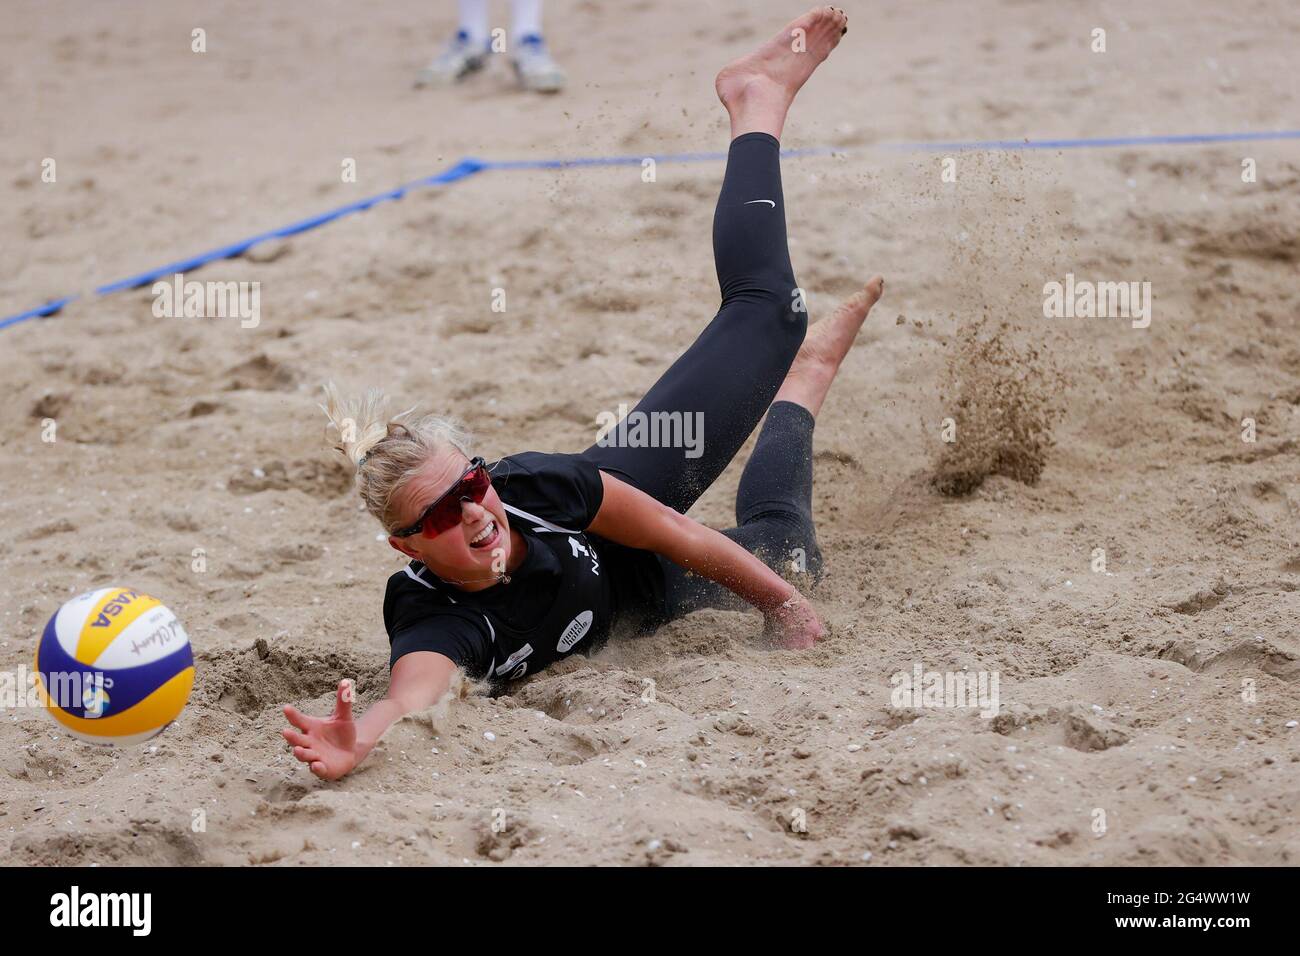 Den Haag, PAYS-BAS - JUIN 23 : Emilie Olimstad (1) de Norvège lors de la finale de la coupe continentale CEV Beachvolleybal 2021 à la Haye Beach Stadion le 23 juin 2021 à Den Haag, pays-Bas (photo de PIM Waslander/Orange Pictures) Banque D'Images